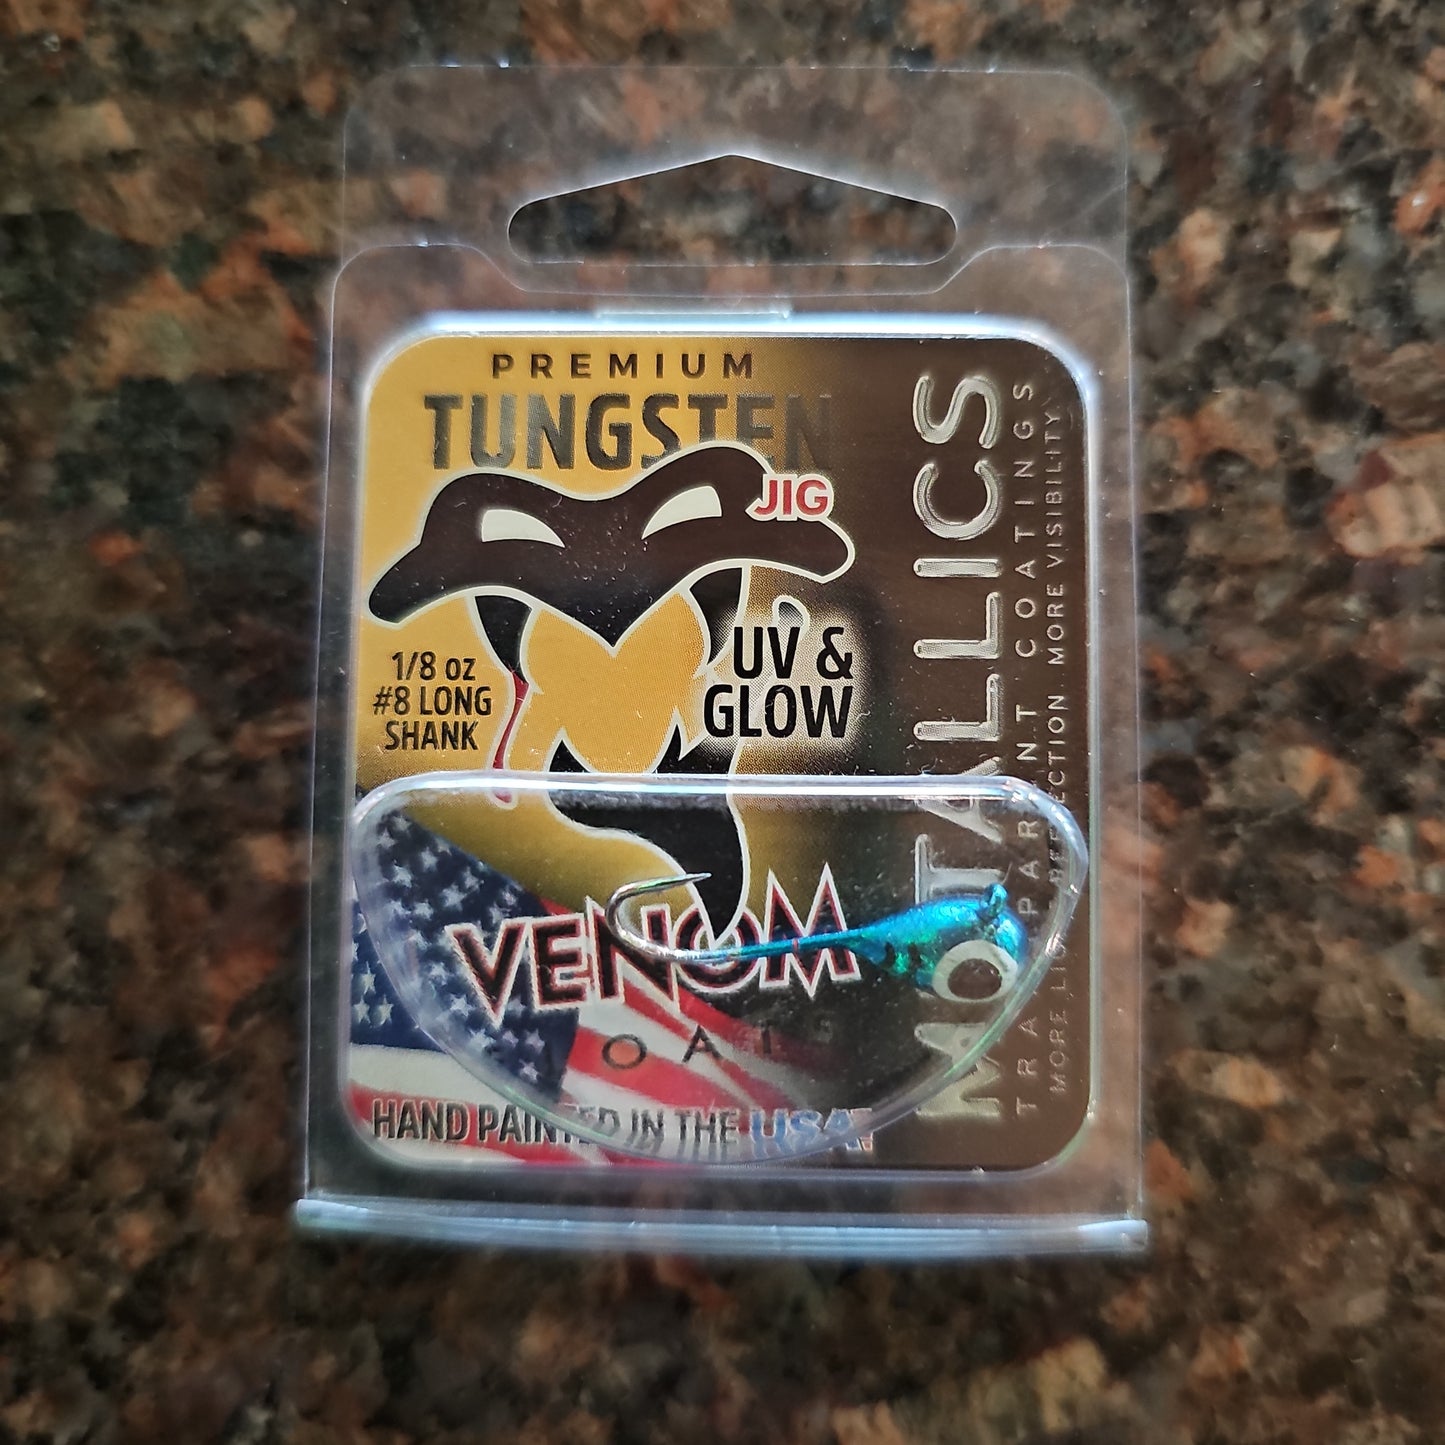 Venom Premium Tungsten UV Jig